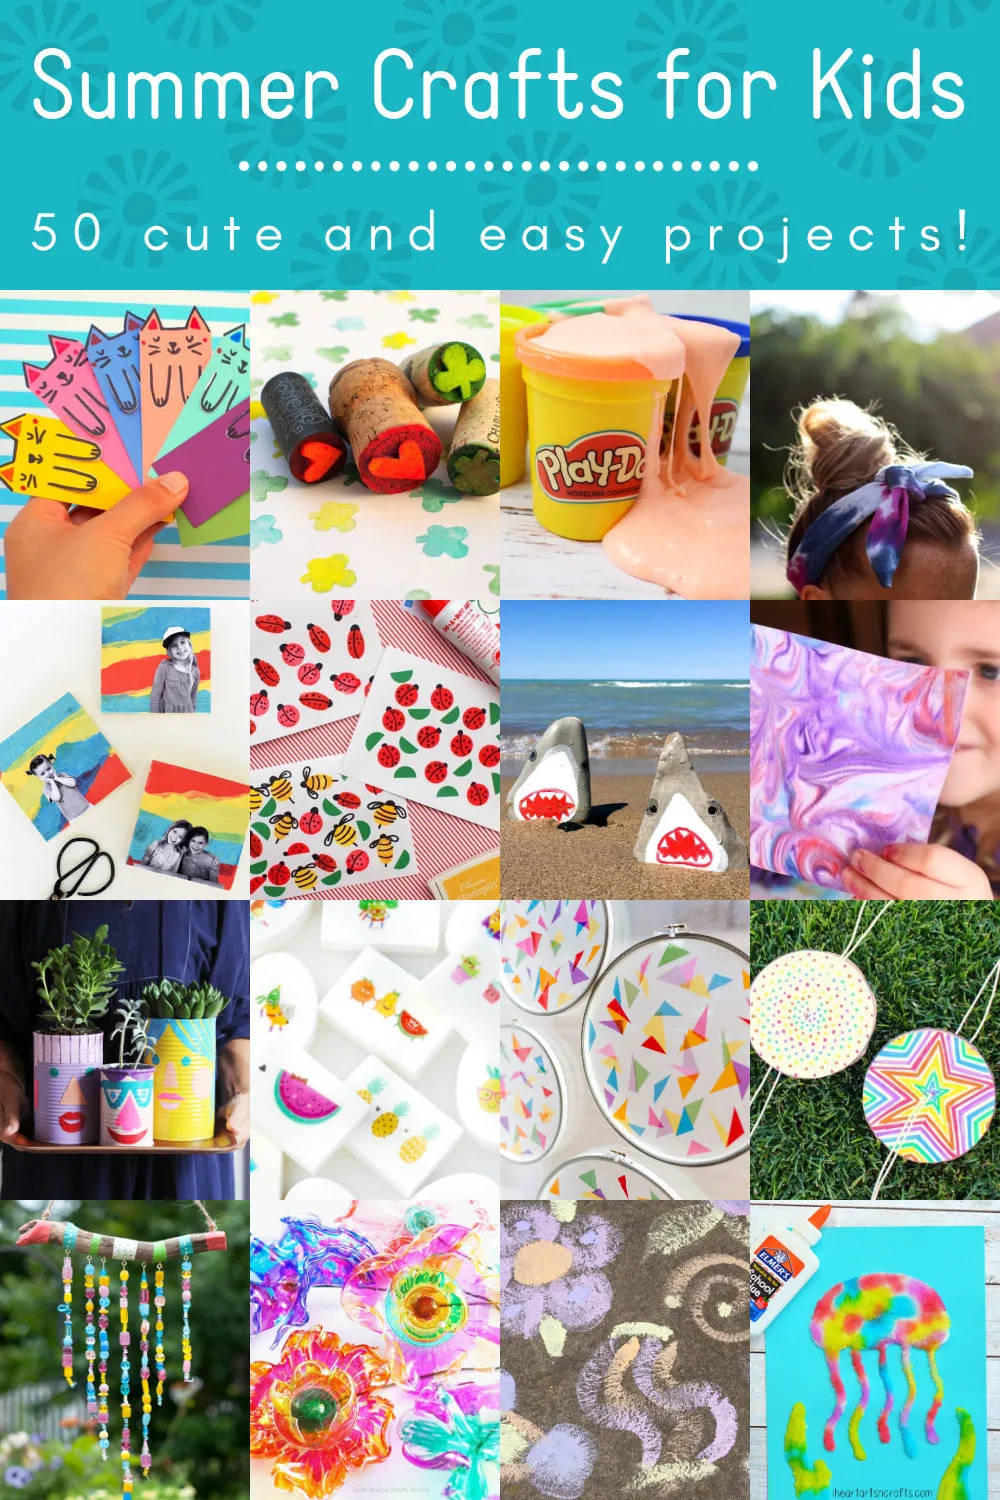 https://diycandy.b-cdn.net/wp-content/uploads/2021/05/Summer-Crafts-for-Kids-DIY-Candy.jpg.webp